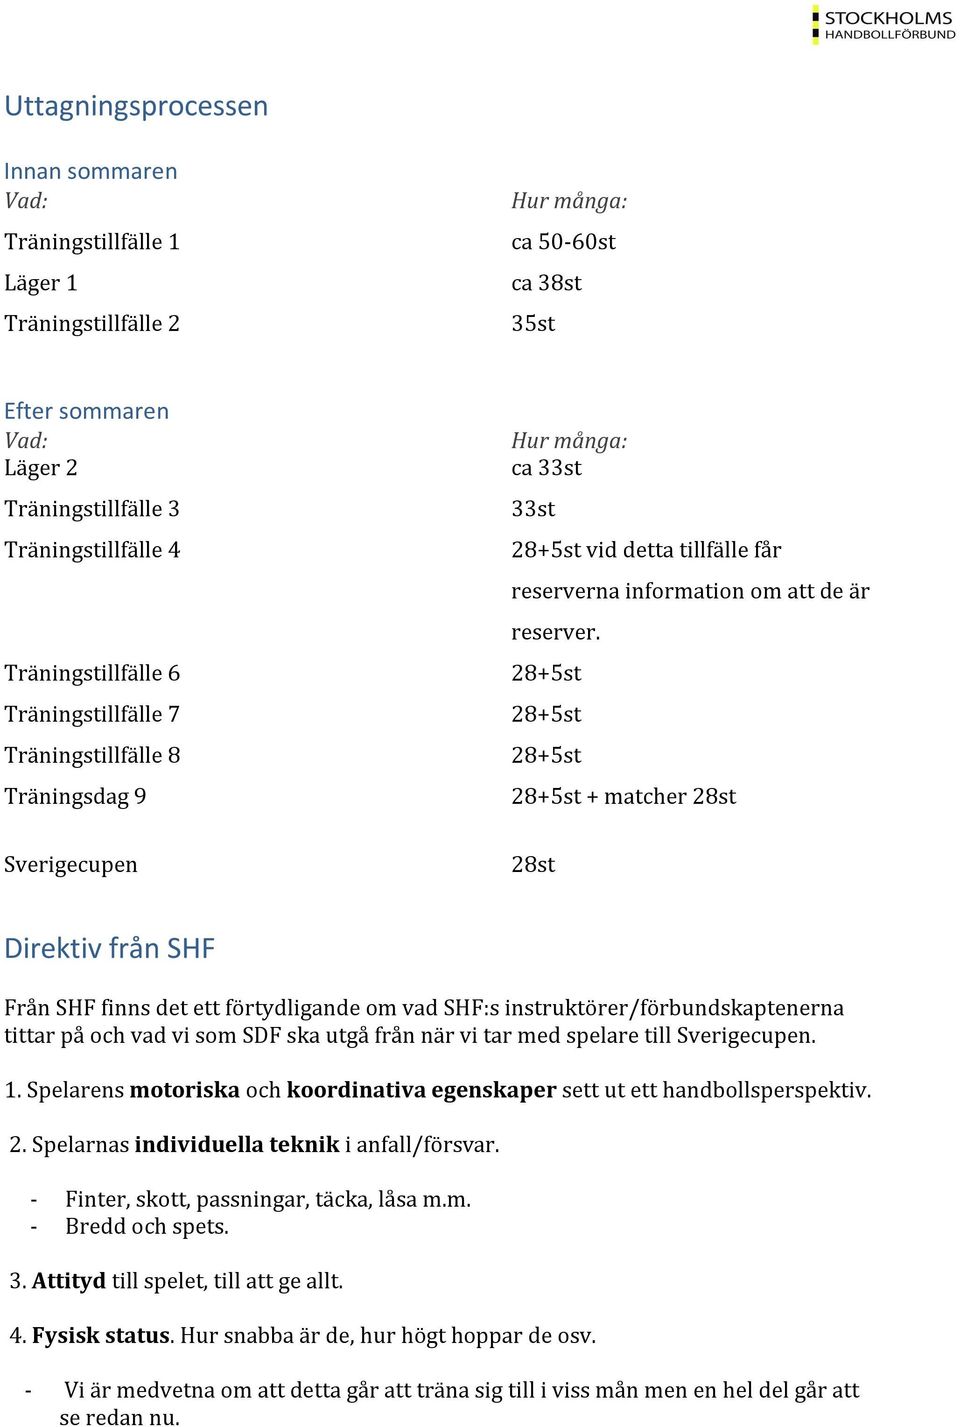 28+5st 28+5st 28+5st 28+5st + matcher 28st Sverigecupen 28st Direktiv från SHF Från SHF finns det ett förtydligande om vad SHF:s instruktörer/förbundskaptenerna tittar på och vad vi som SDF ska utgå